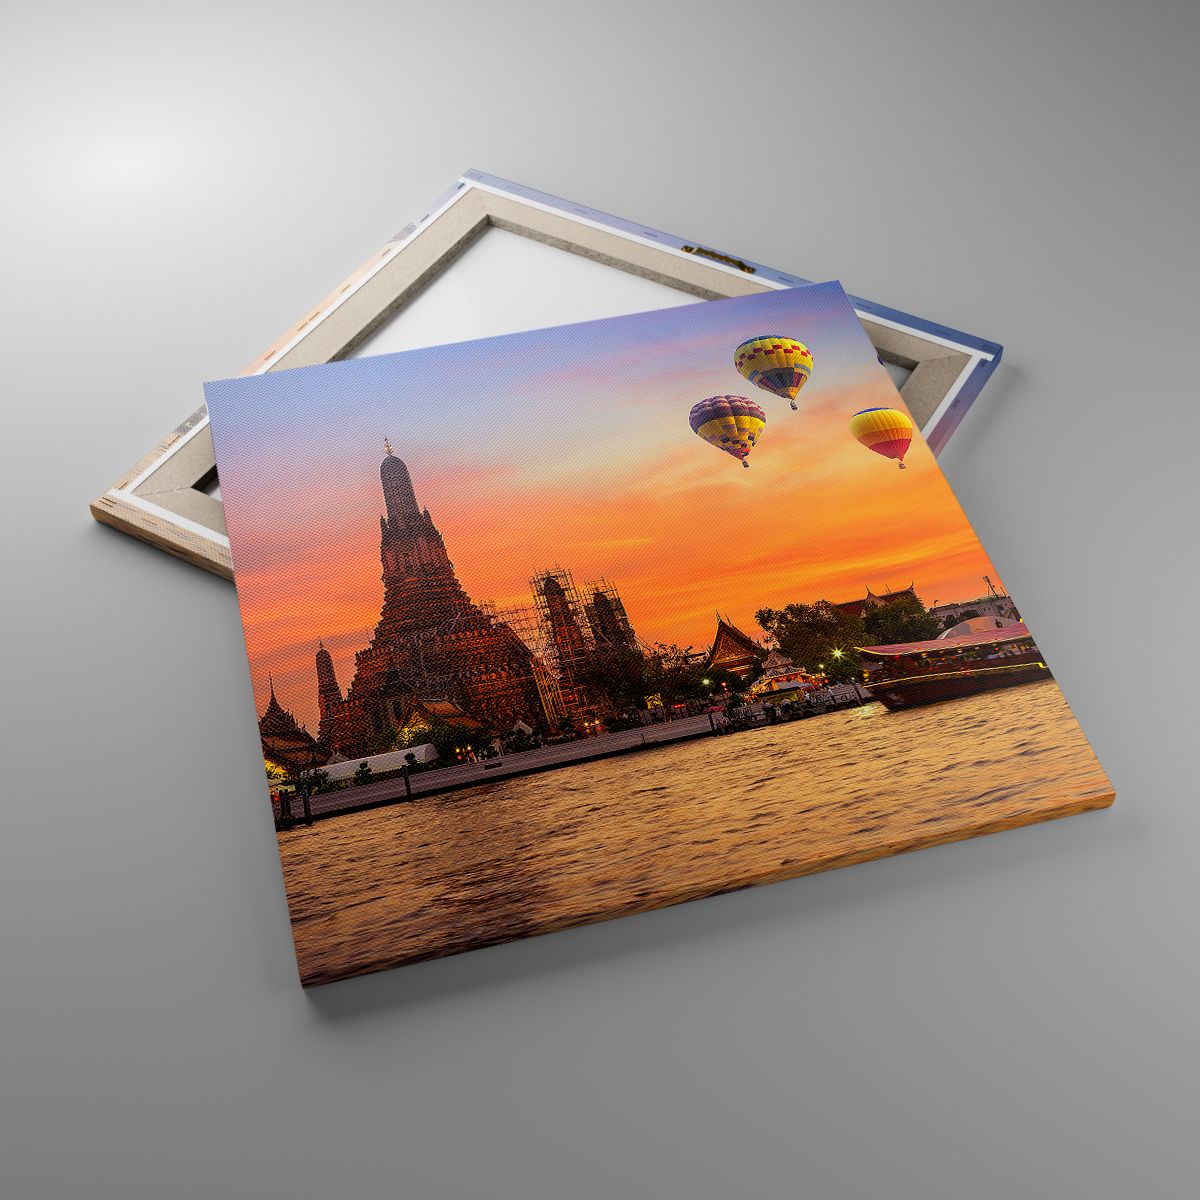 Obrazy Bangkok, Obrazy Świątynia Świtu, Obrazy Tajlandia, Obrazy Balony, Obrazy Azja